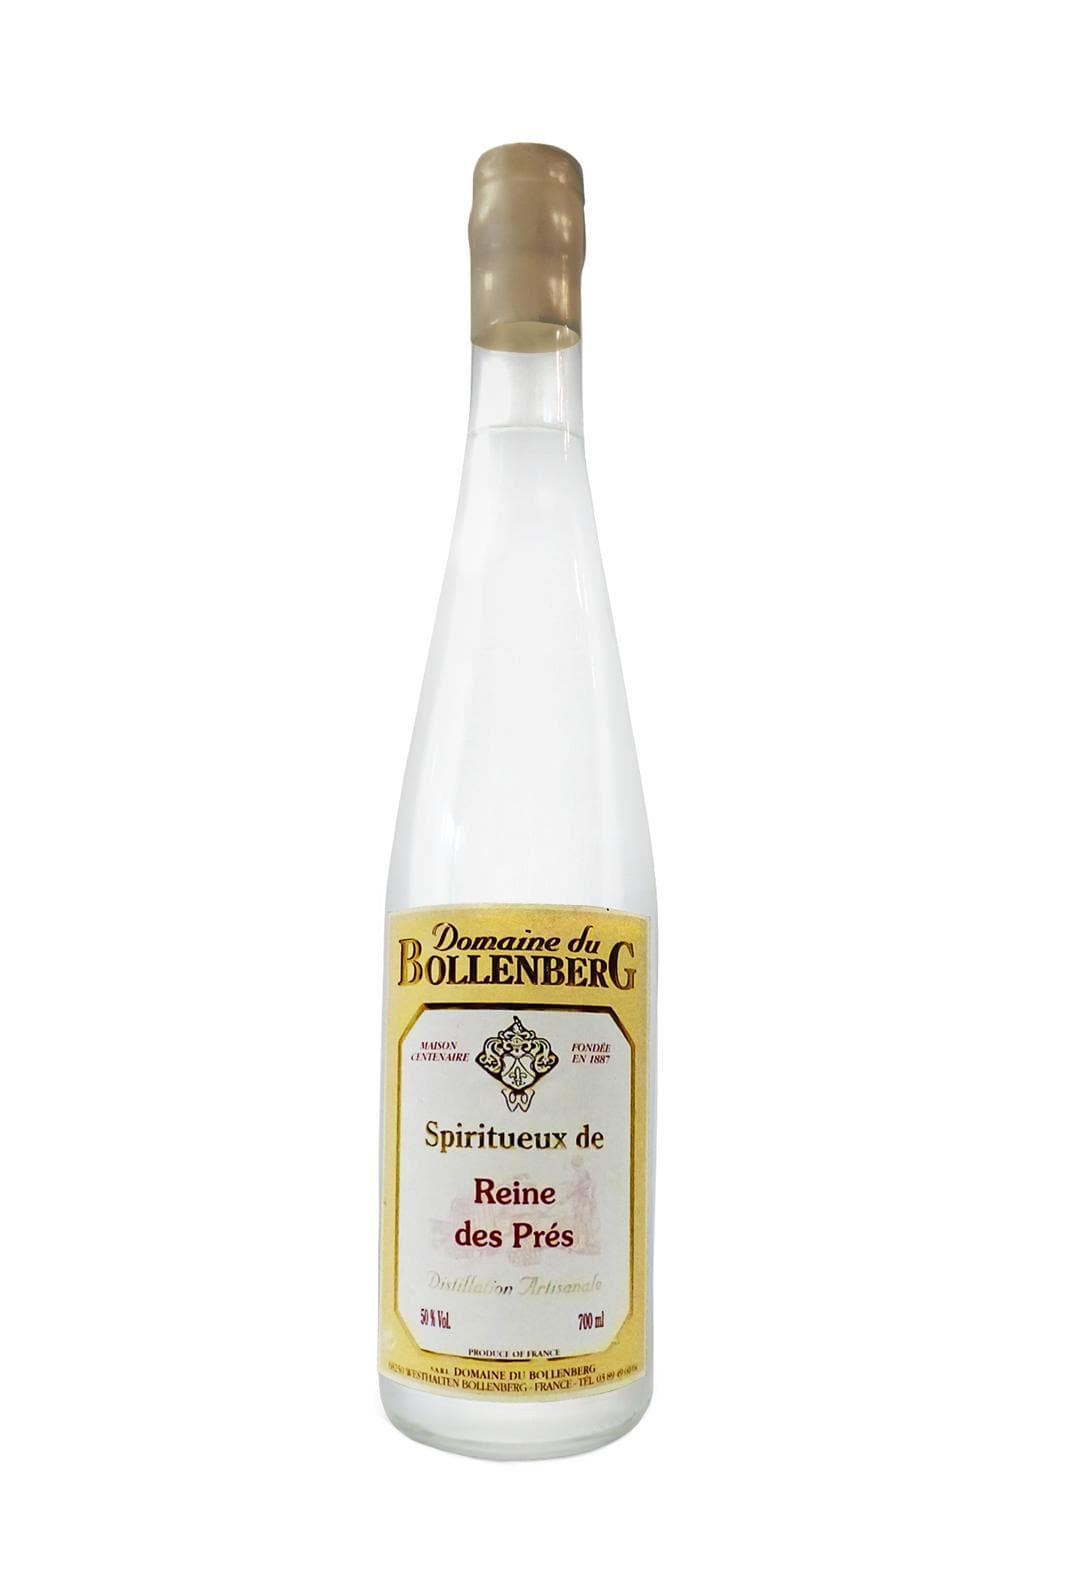 Bollenberg Eau de Vie de Reine des Pres (Meadowsweet) 50% 350ml | Liqueurs | Shop online at Spirits of France